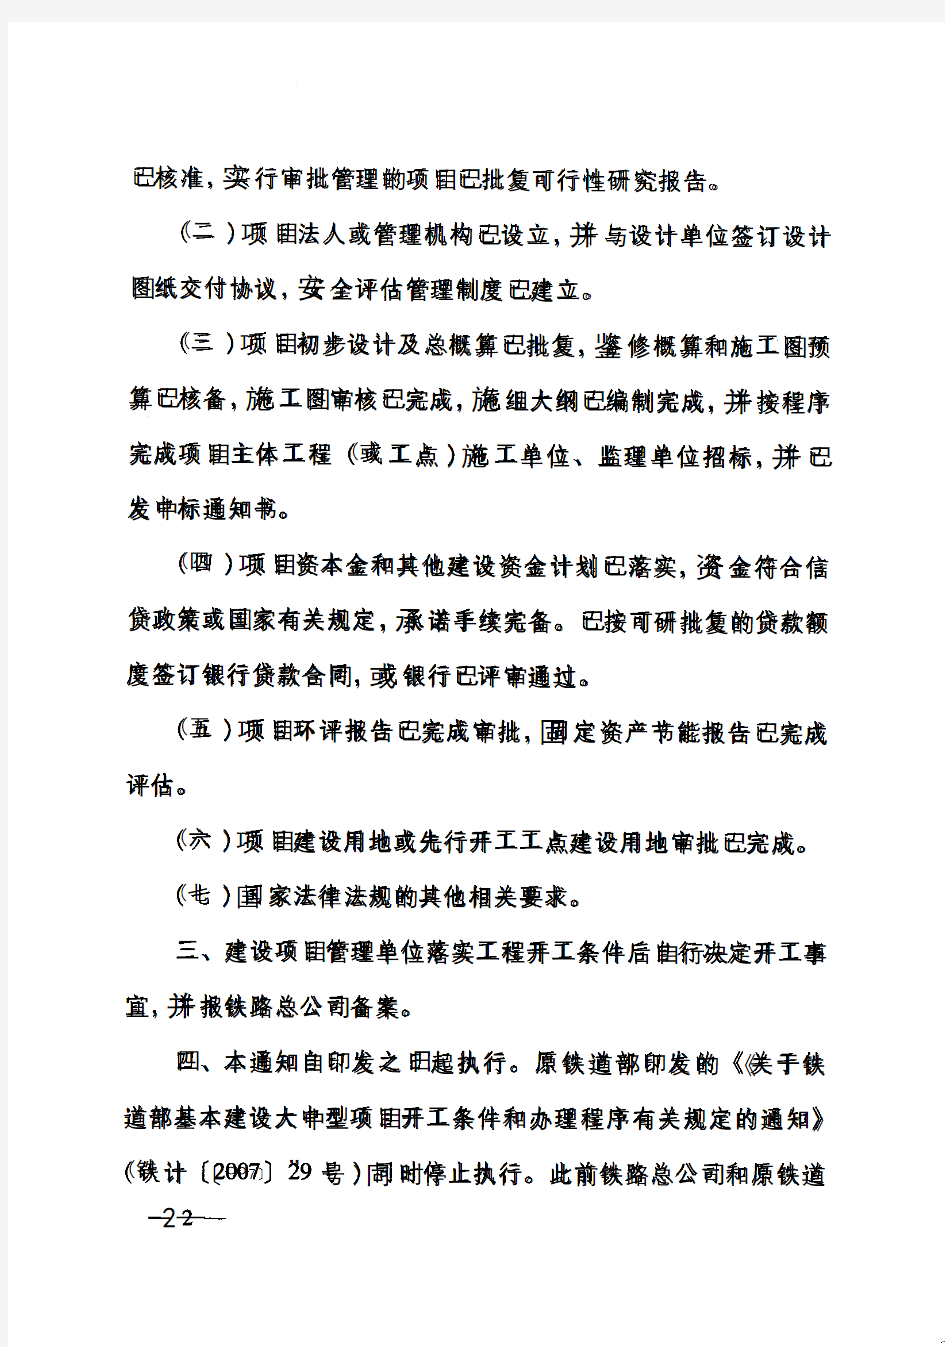 中国铁路总公司关于取消铁路建设项目开工报告审批的通知